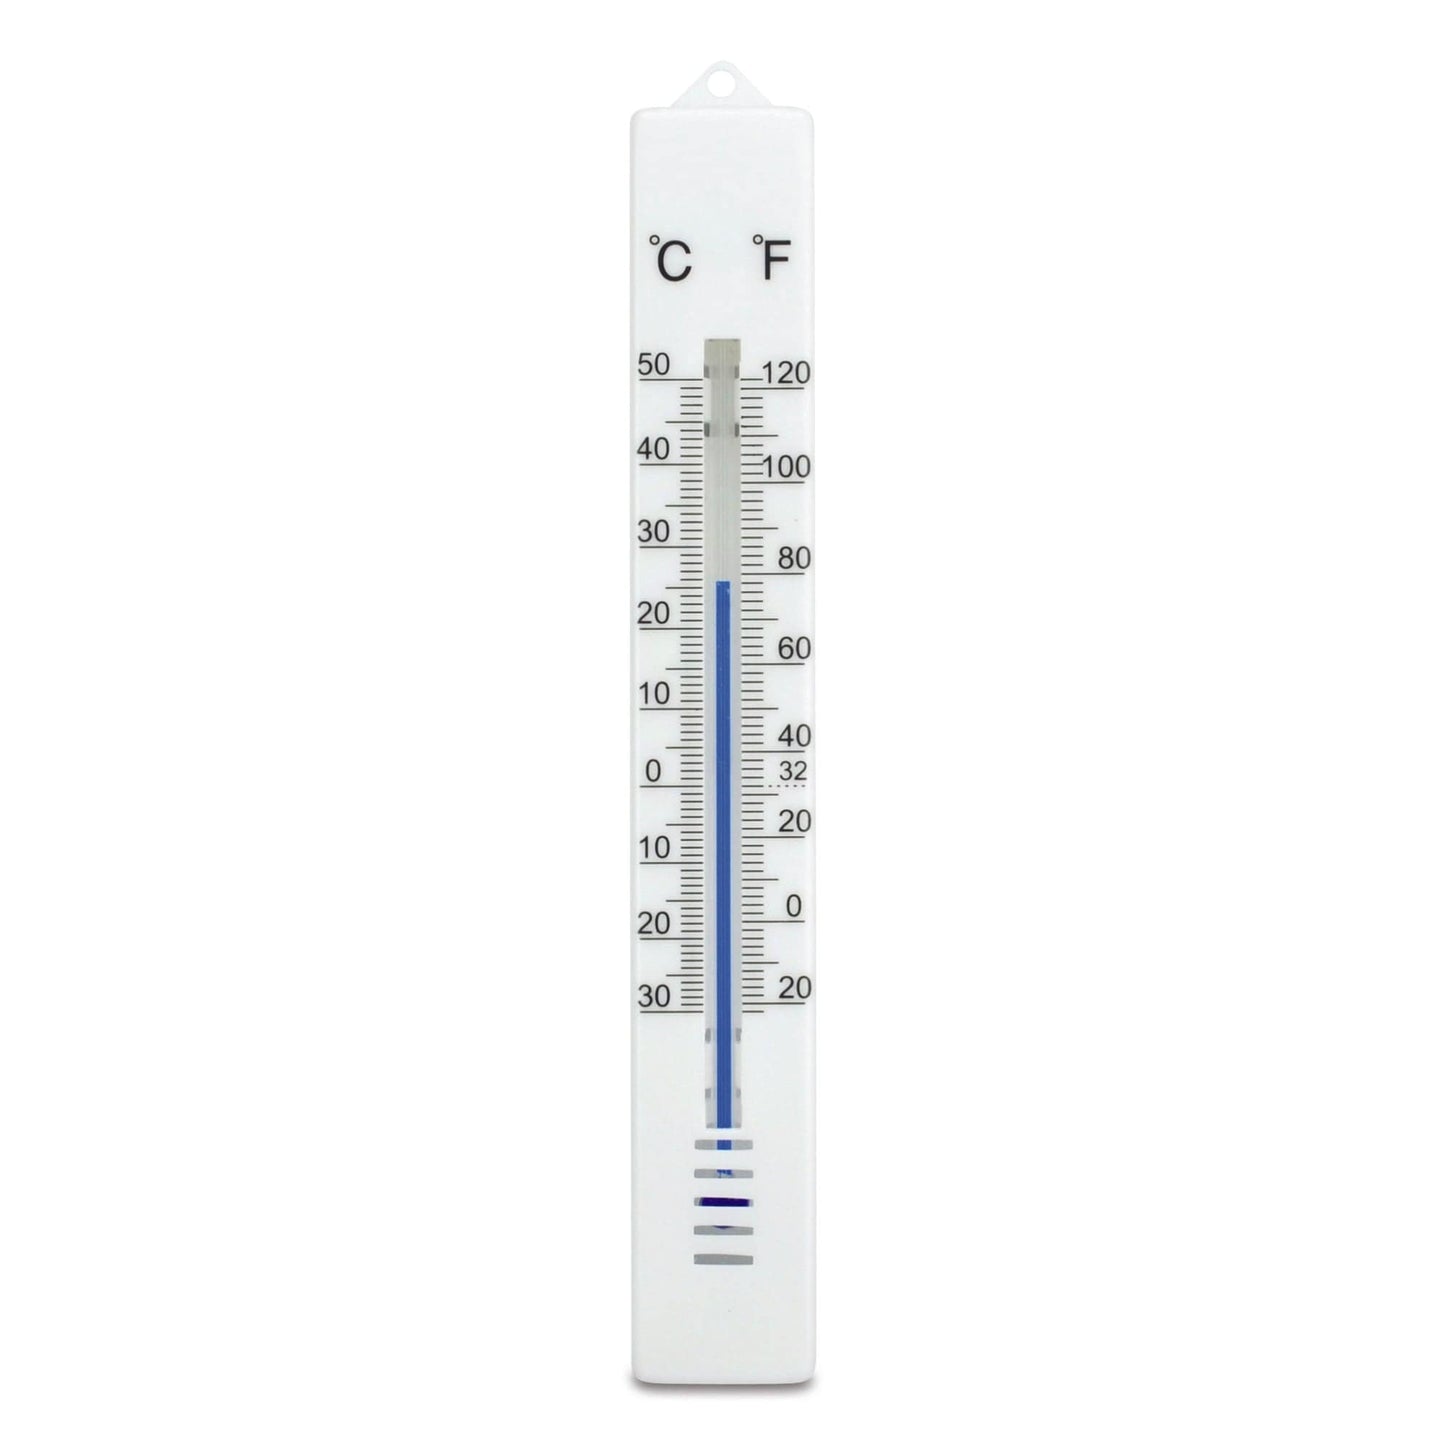 un Thermomètre d'ambiance - 25 x 175 mm par Thermometre.fr sur fond blanc.